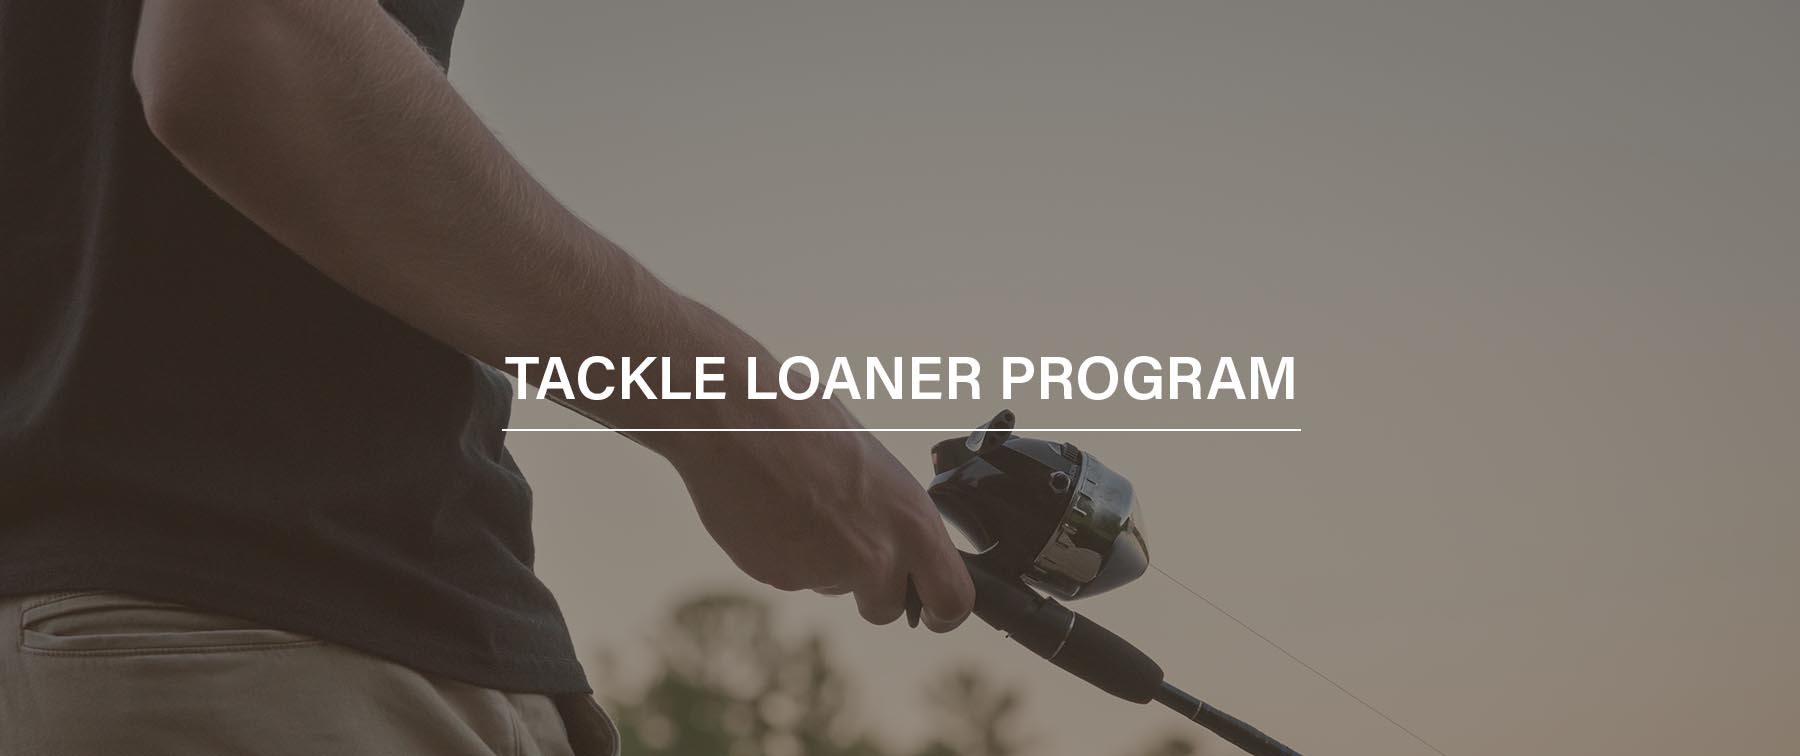 Tackle Loaner Program (TLP)